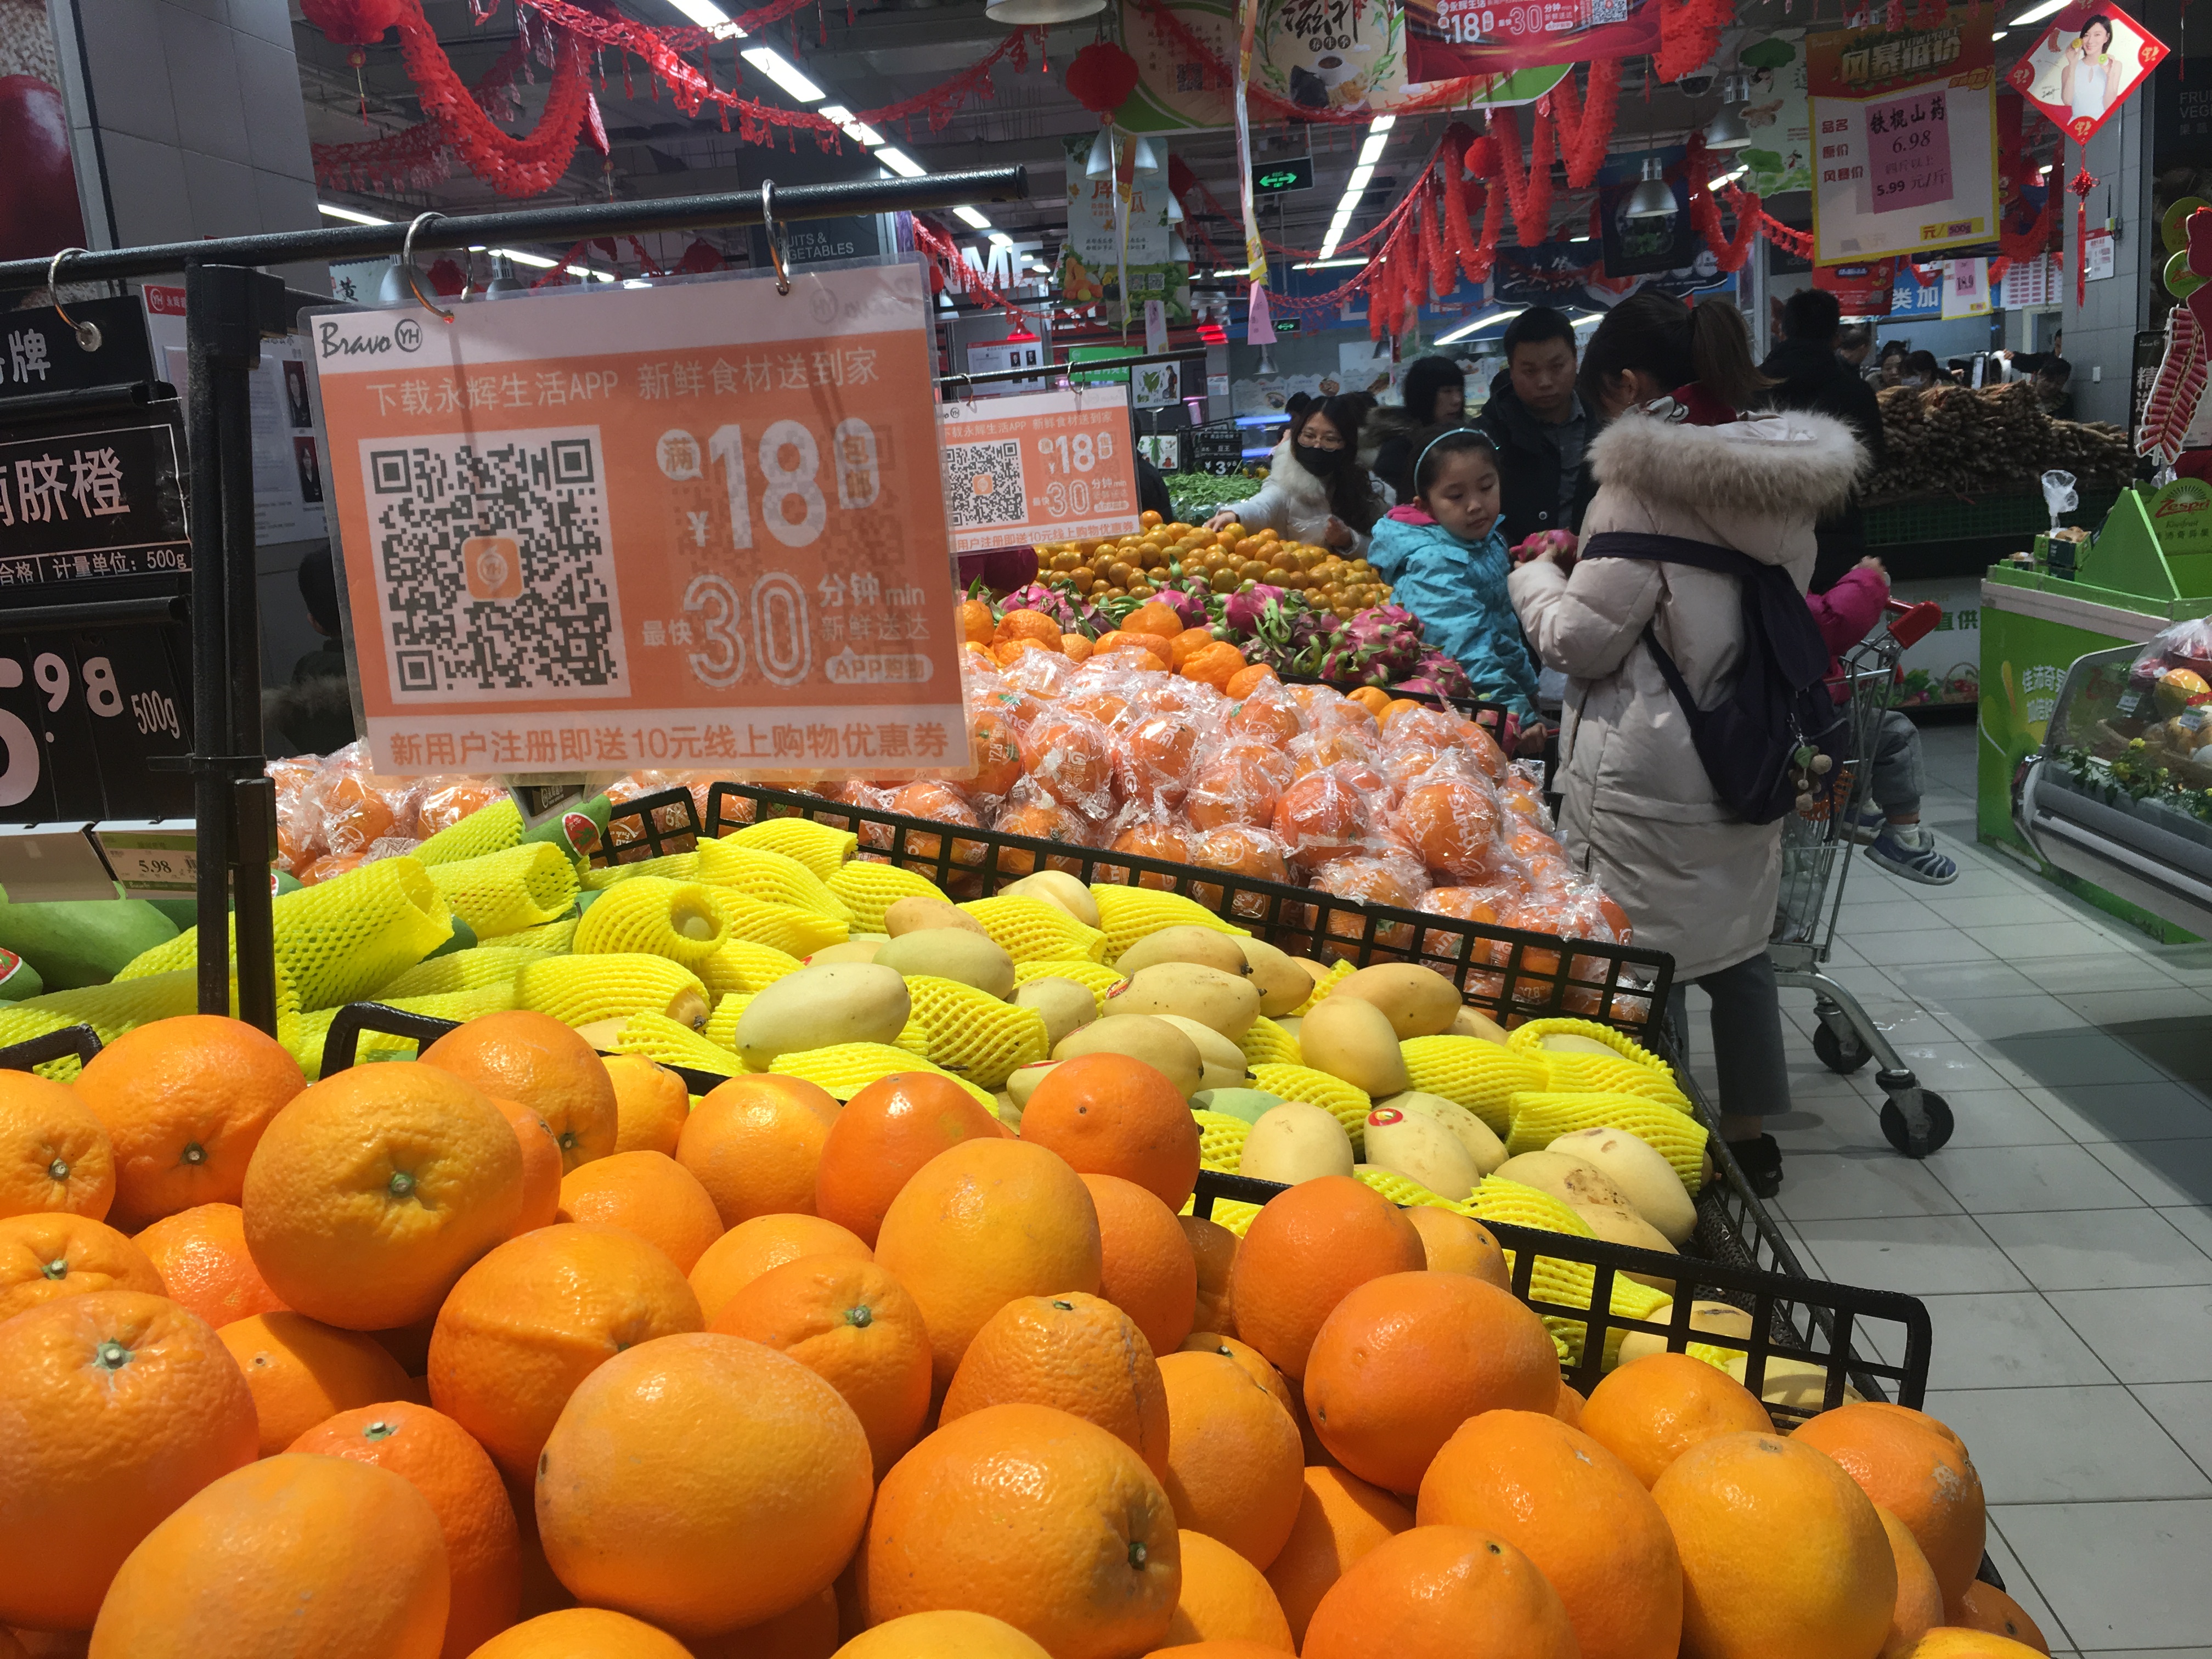 2019年1月1日,西安市锦业路阳光天地广场永辉超市内,市民抢购节日打折